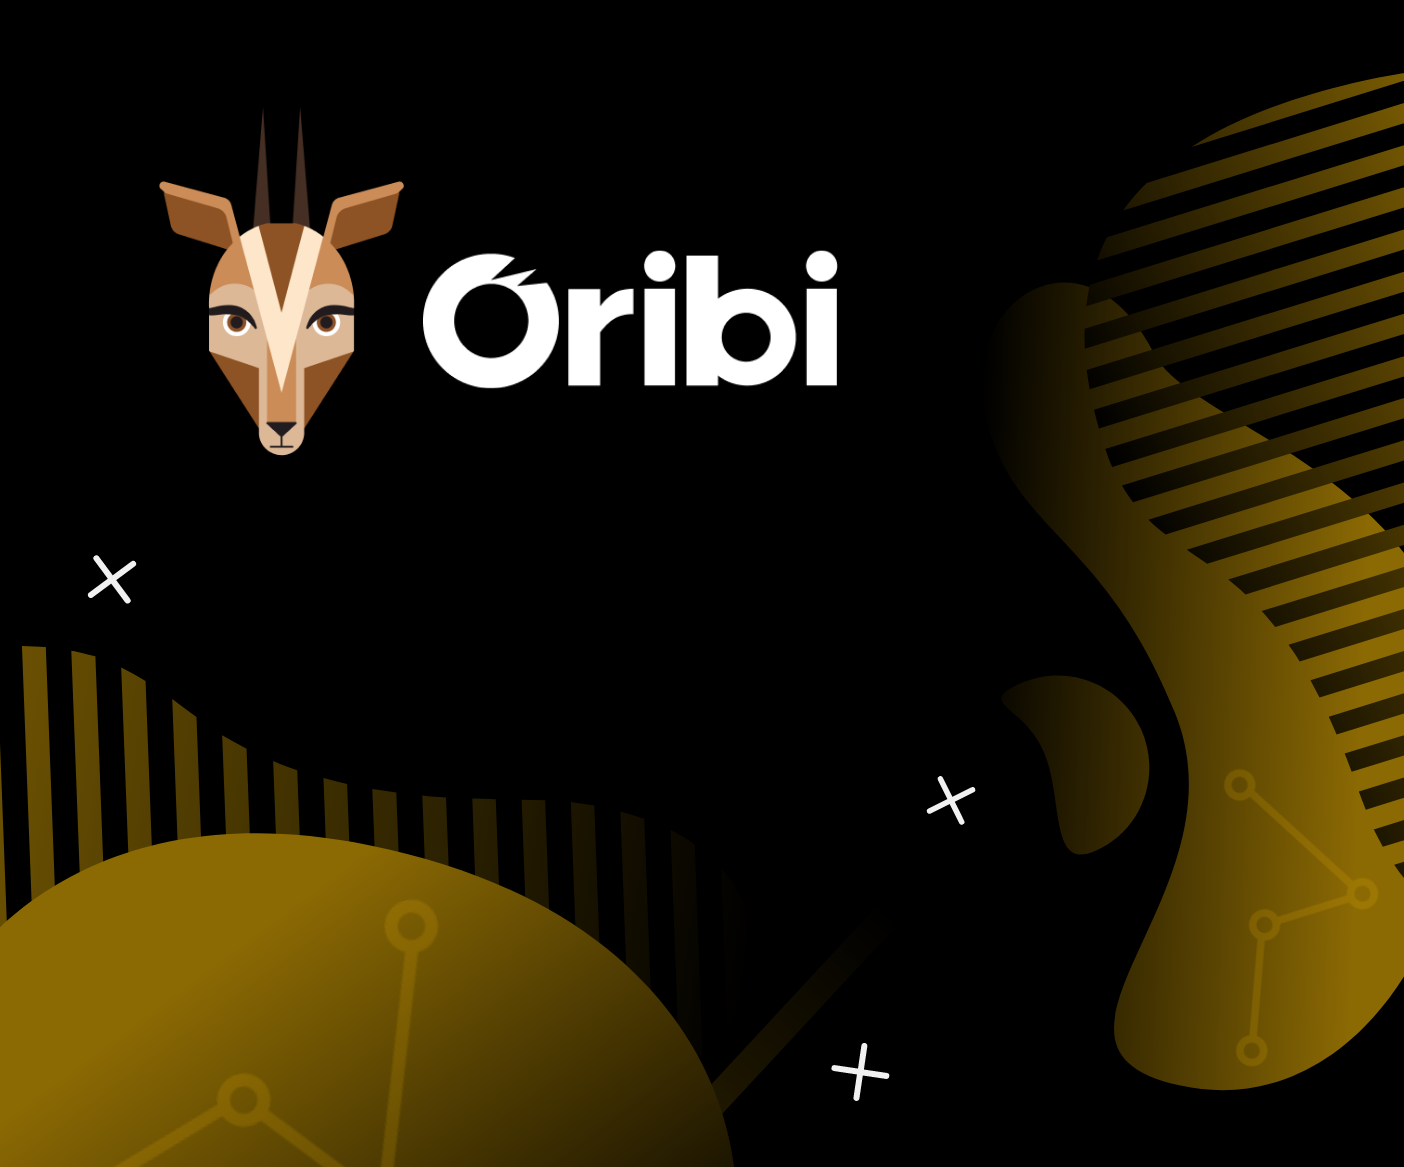 oribi analytics